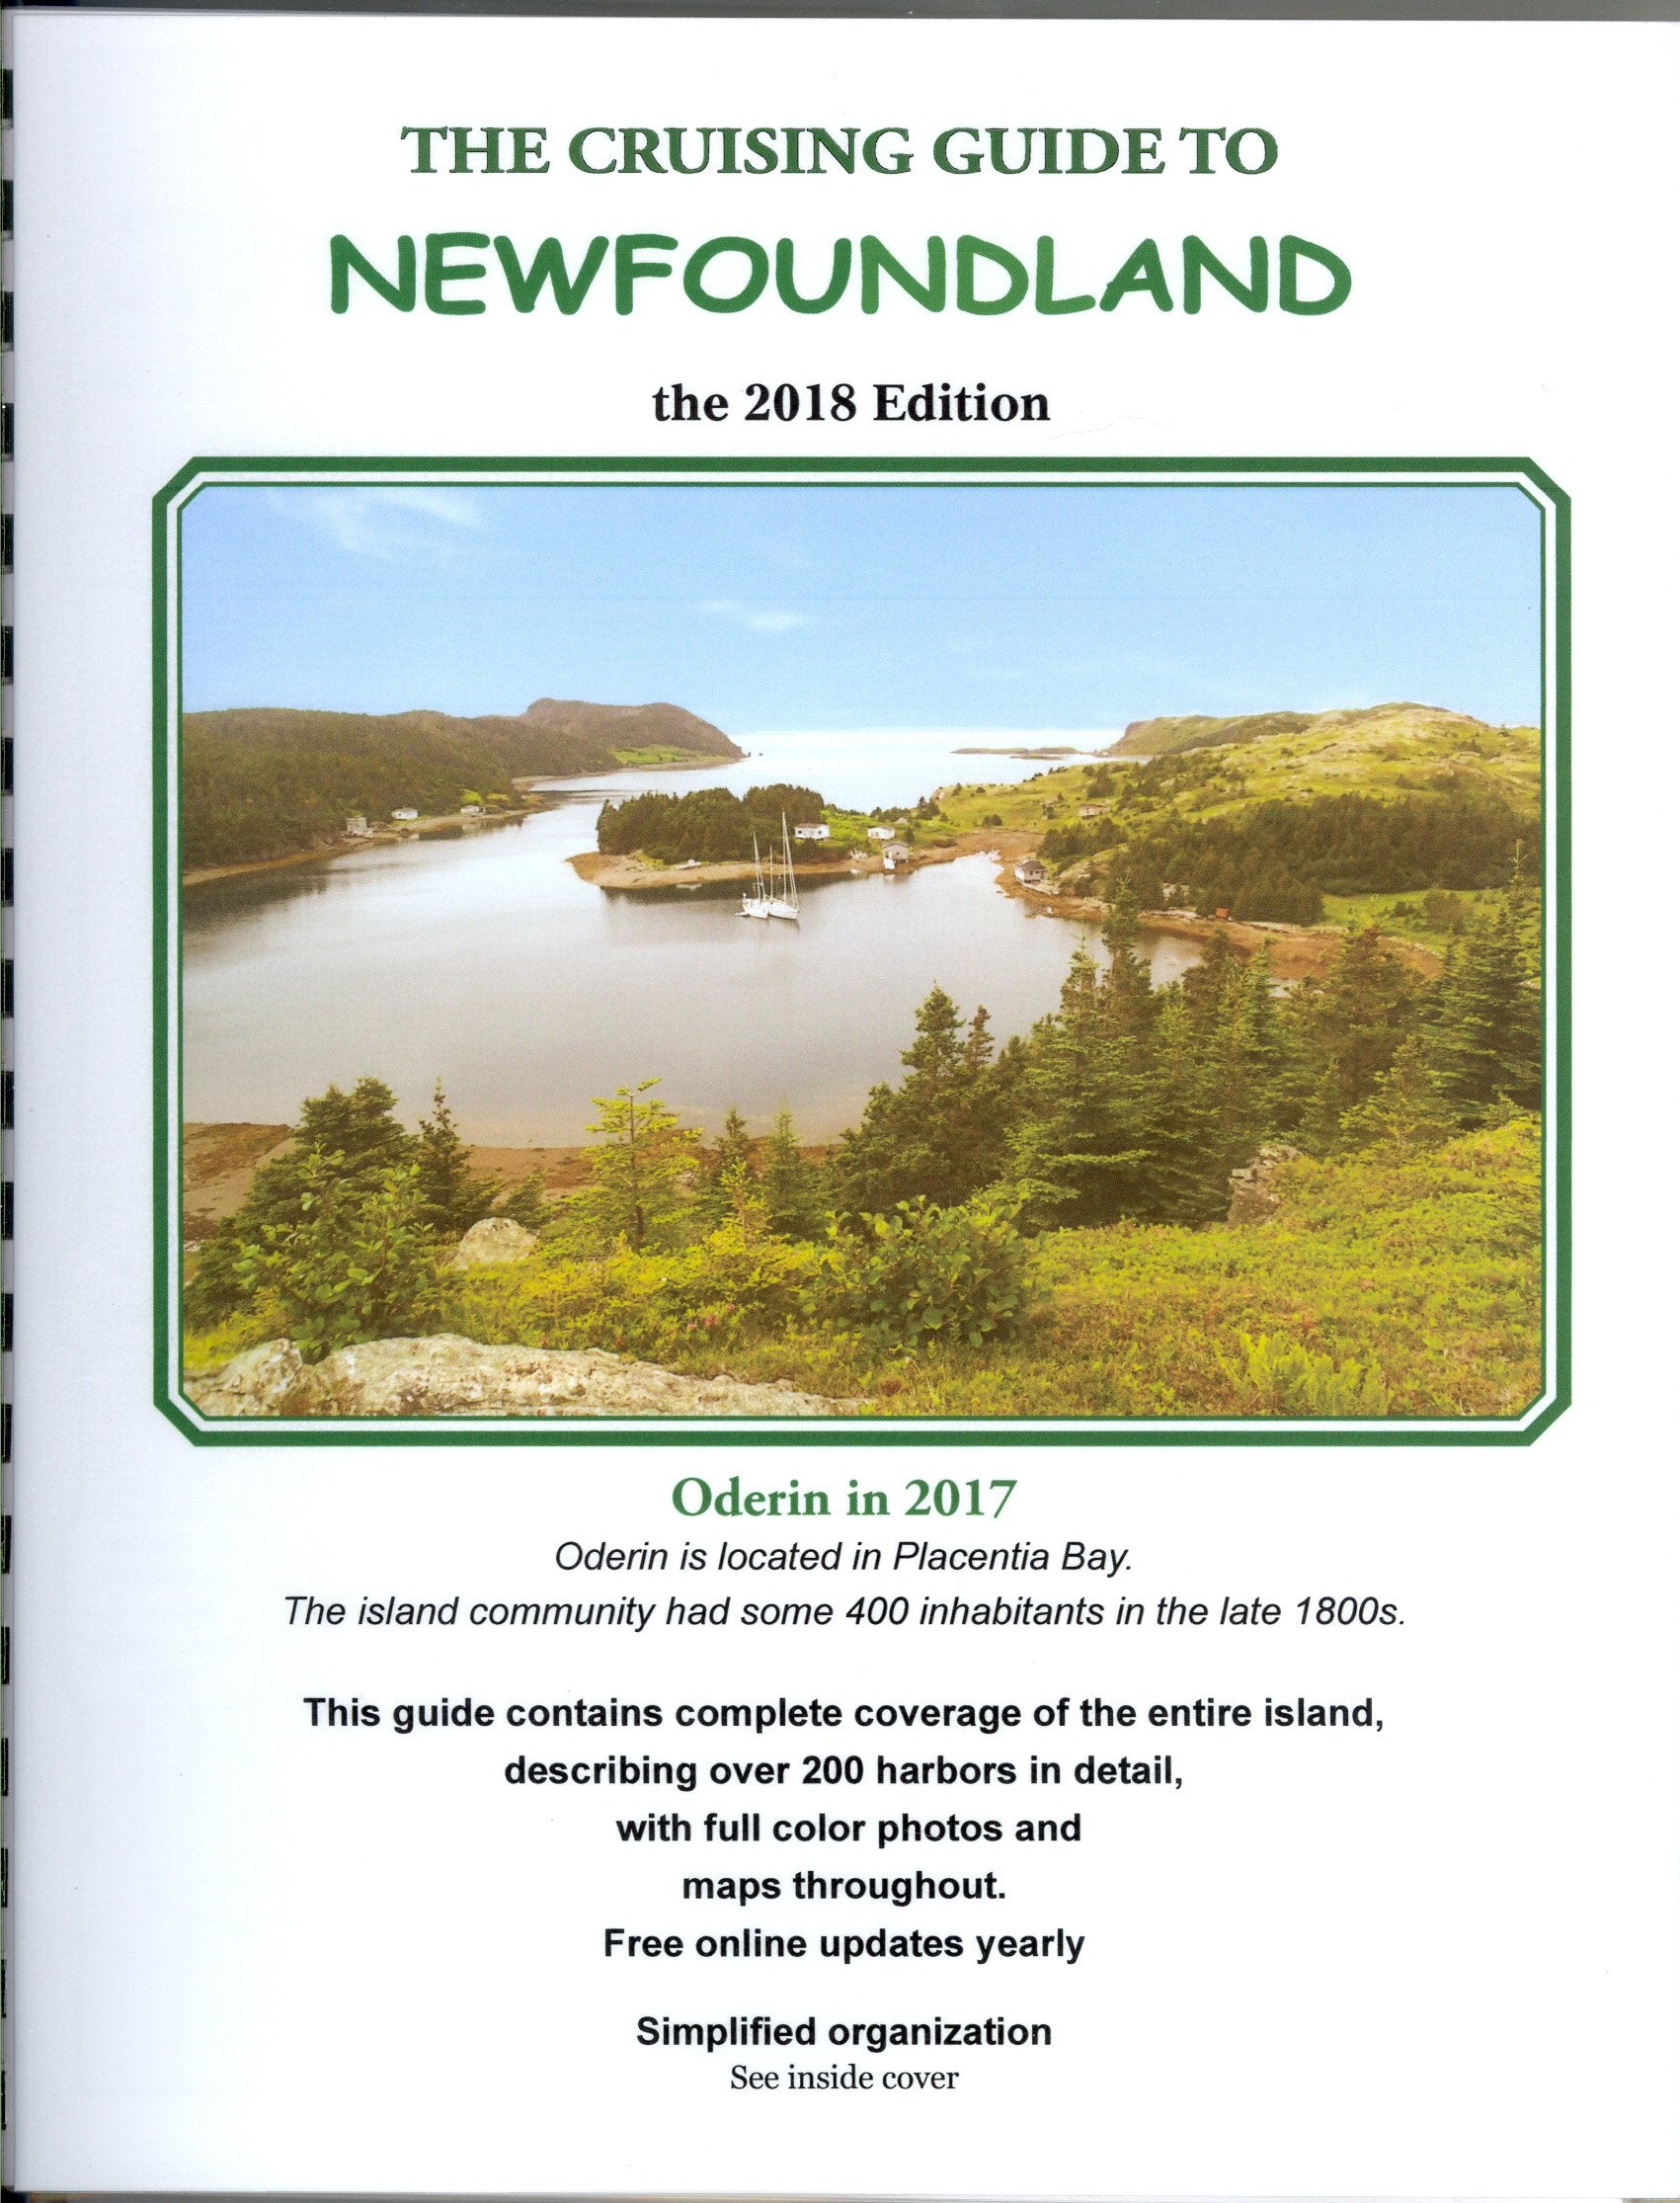 Cruising Guide to Newfoundland